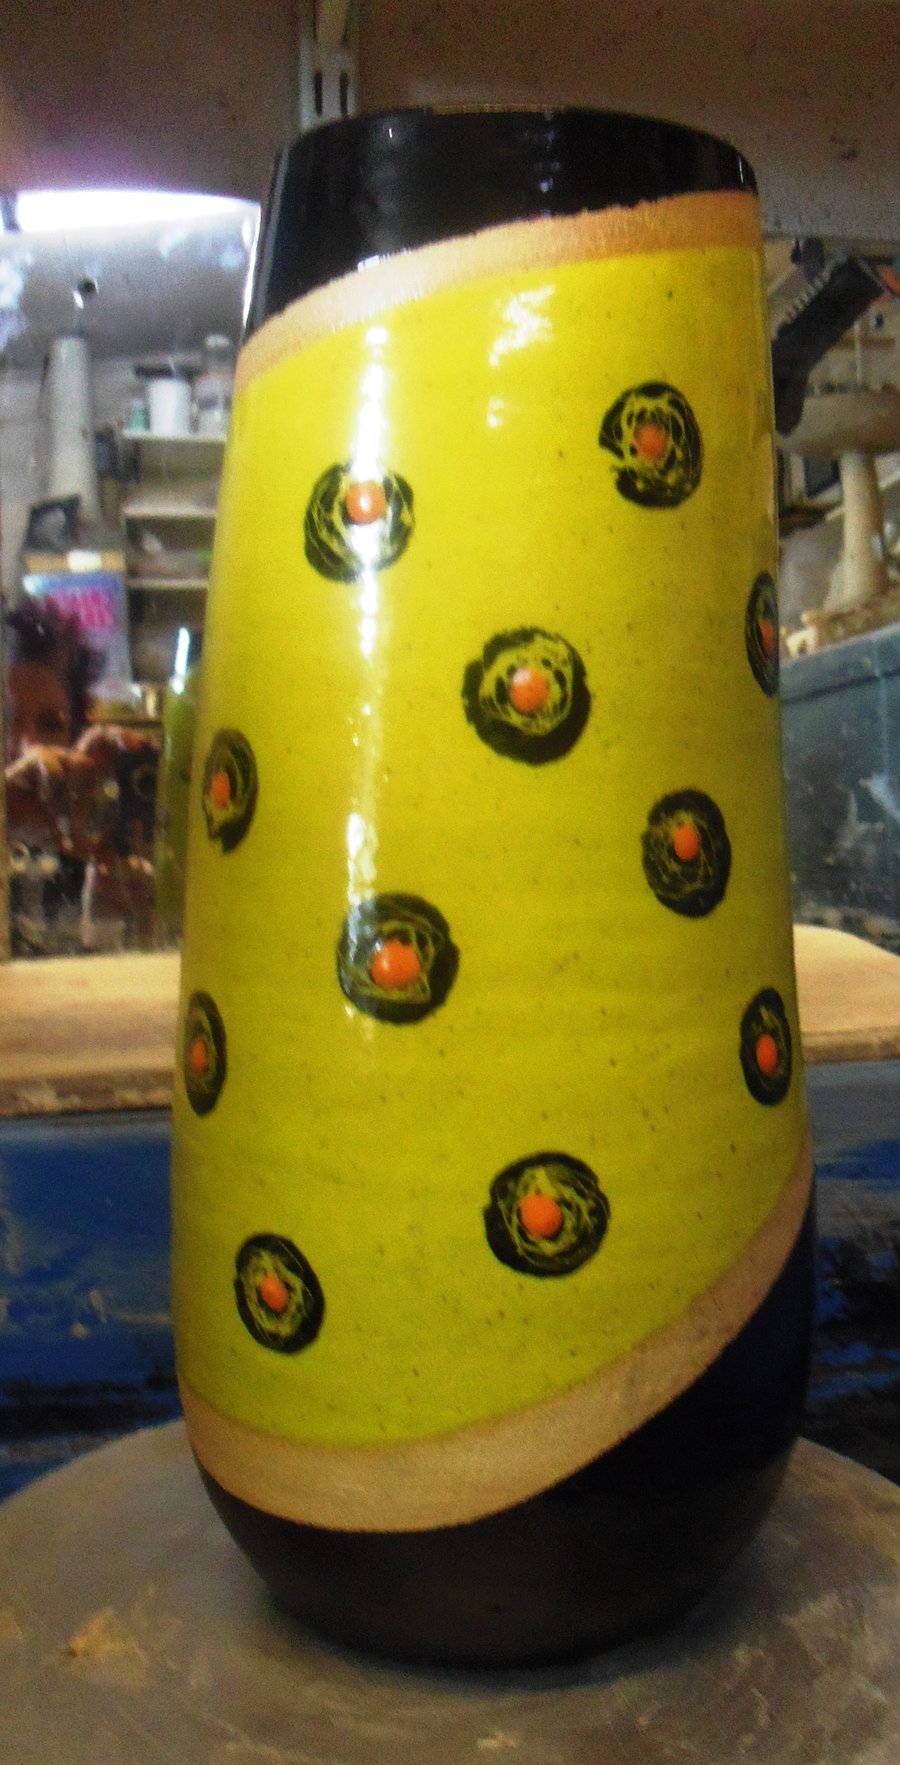 Yellow handpainted "rose" ceramic stoneware vase.